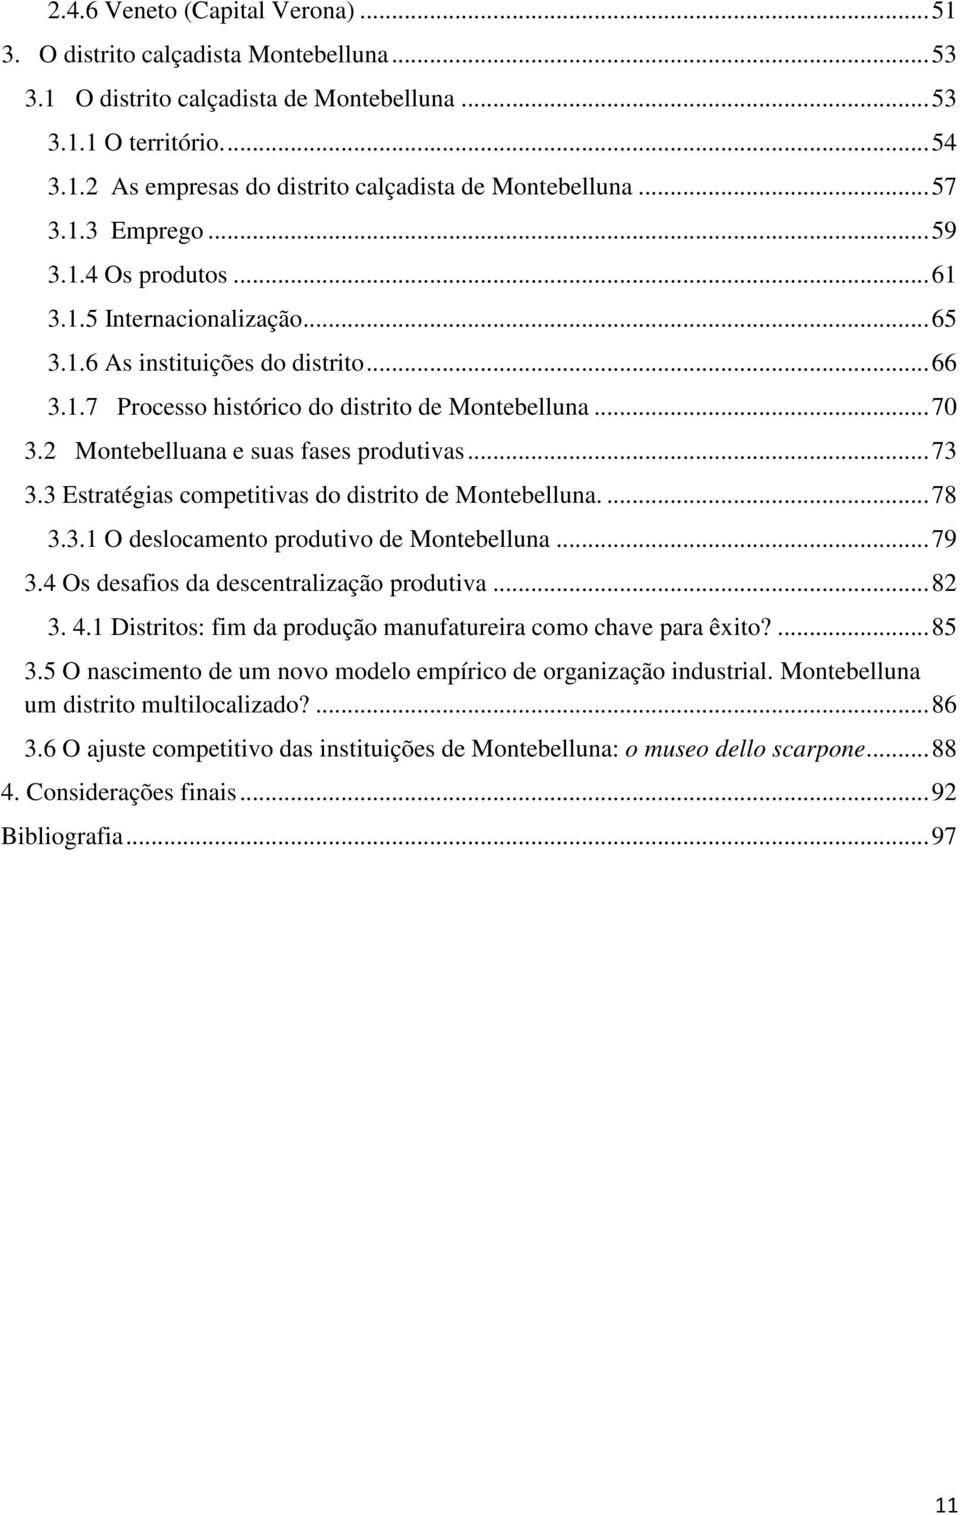 2 Montebelluana e suas fases produtivas... 73 3.3 Estratégias competitivas do distrito de Montebelluna.... 78 3.3.1 O deslocamento produtivo de Montebelluna... 79 3.